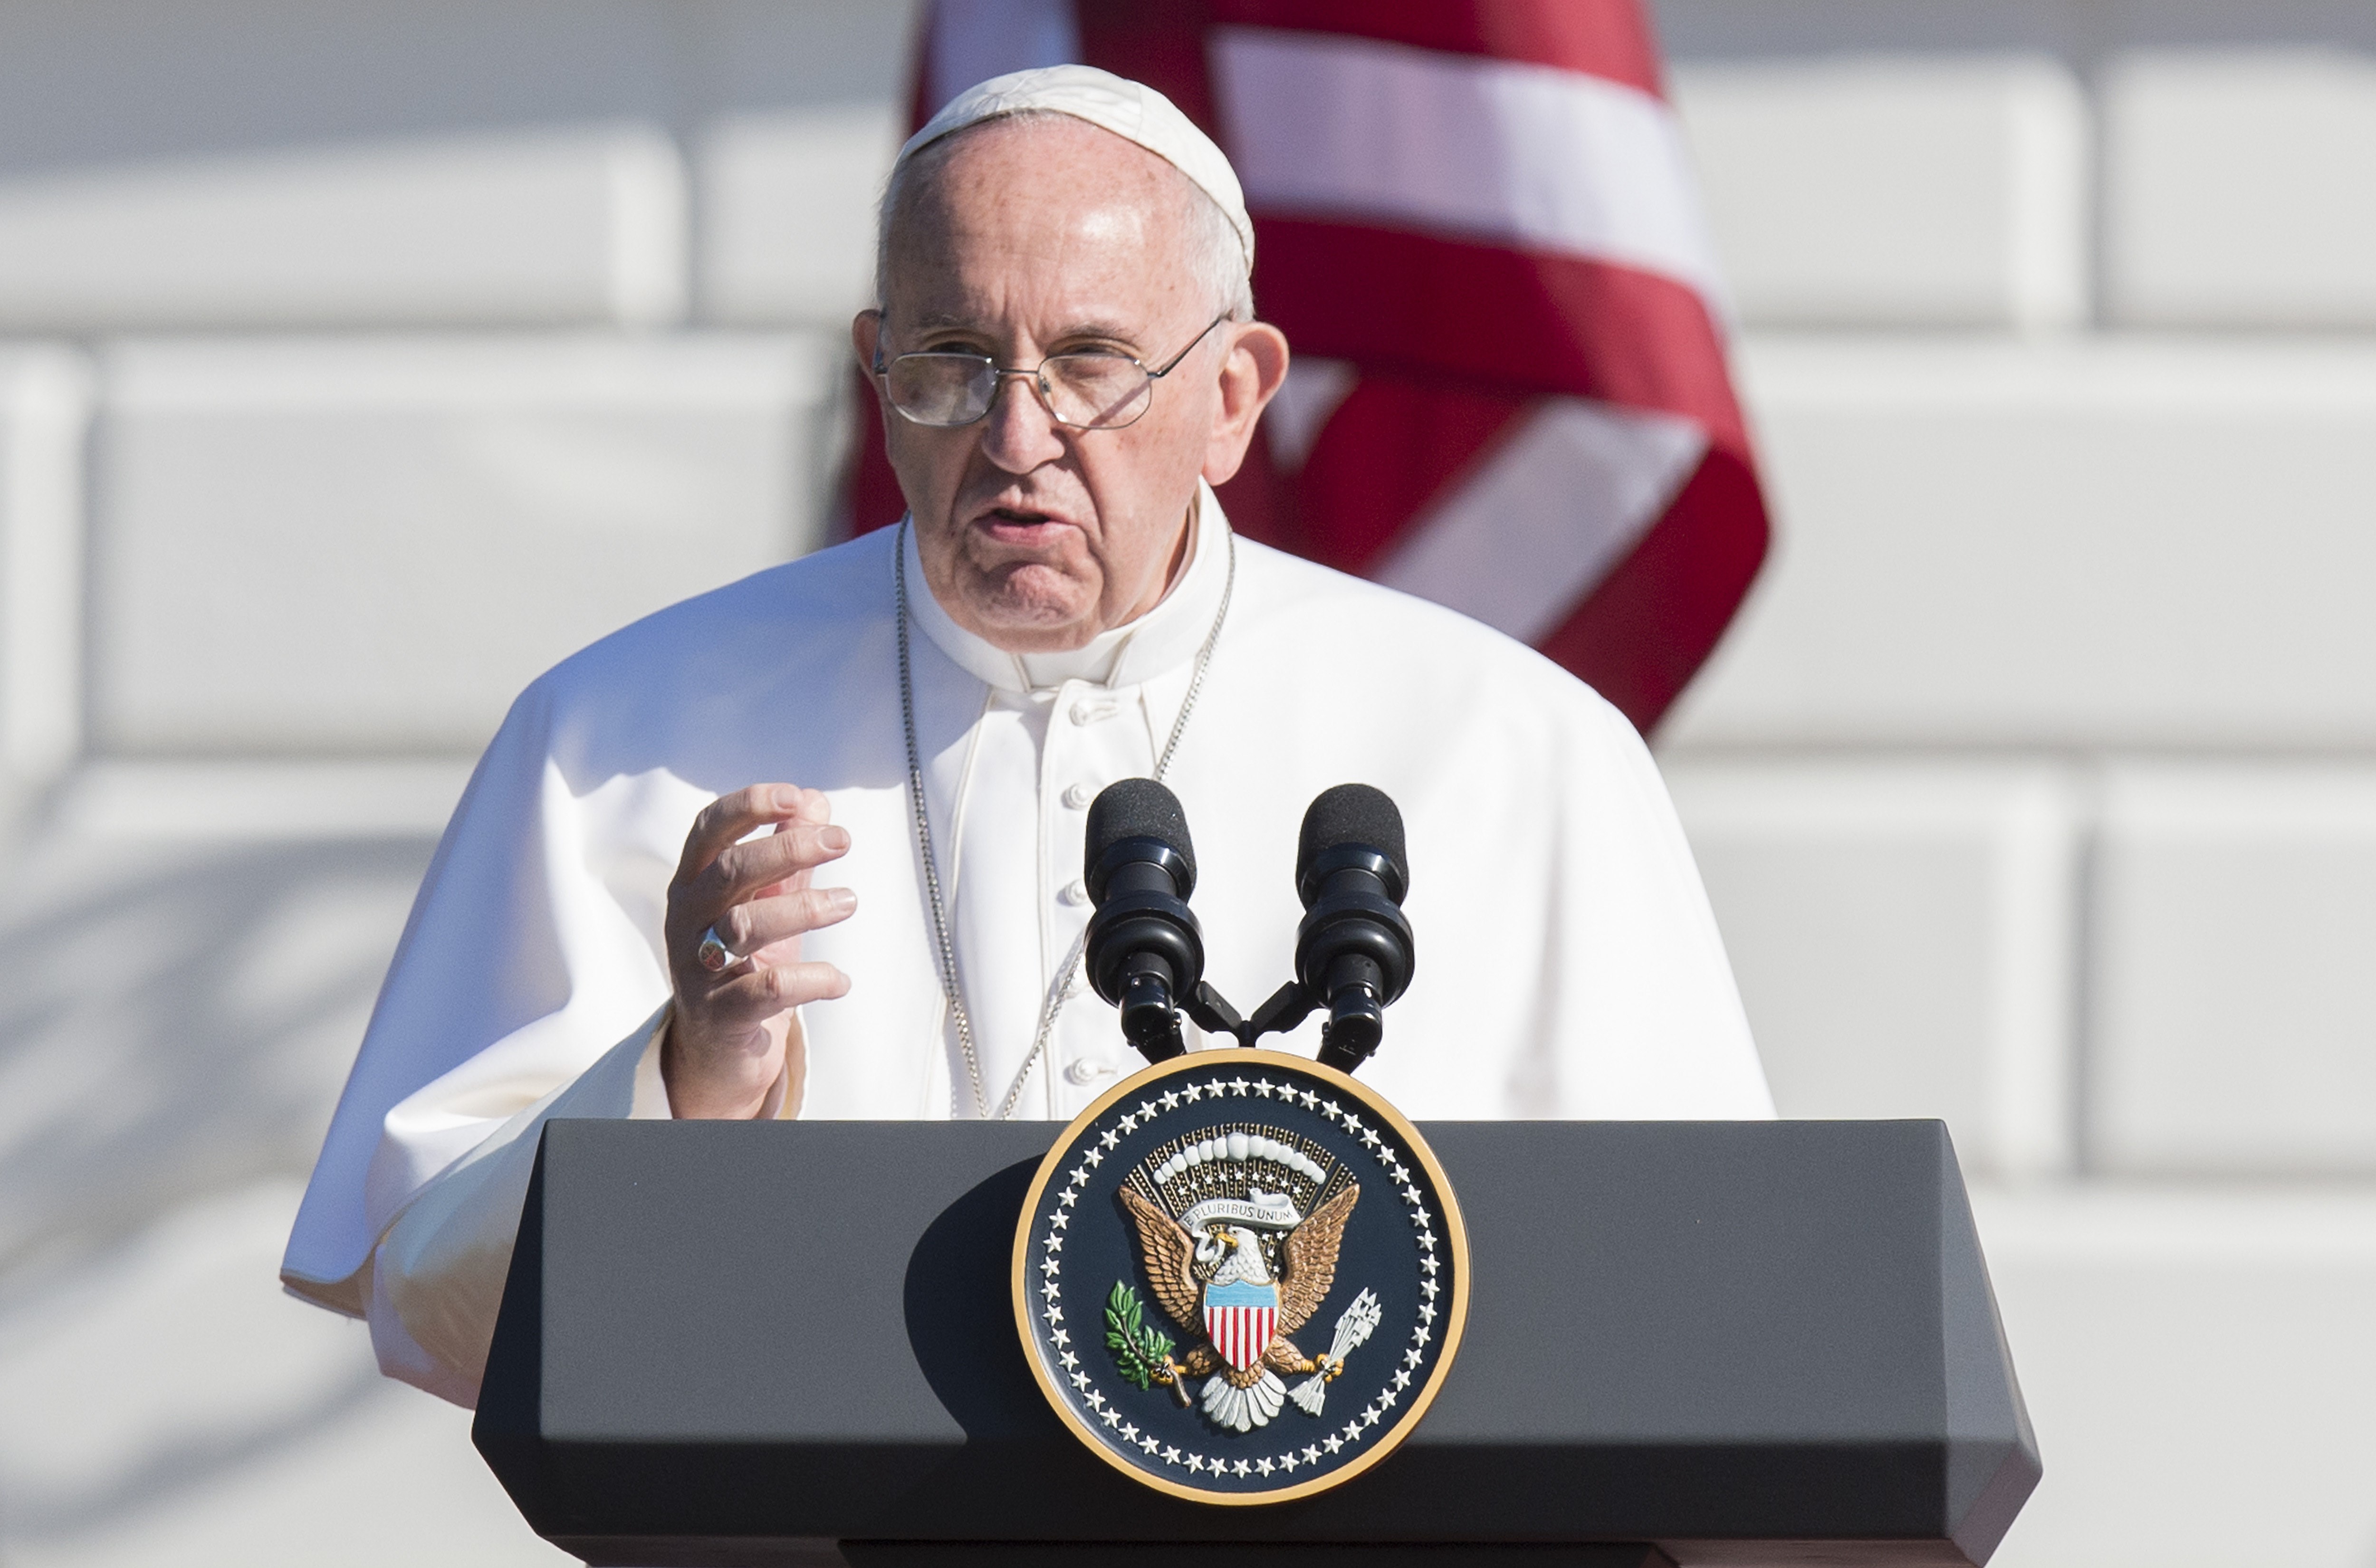 Más de 15.000 personas llenaron el ala sur de la Casa Blanca en una ceremonia de bienvenida a la histórica visita del papa Francisco a los Estados Unidos. Francisco se dirigió a los fieles desde la Casa Blanca (Crédito: JIM WATSON/AFP/Getty Images)